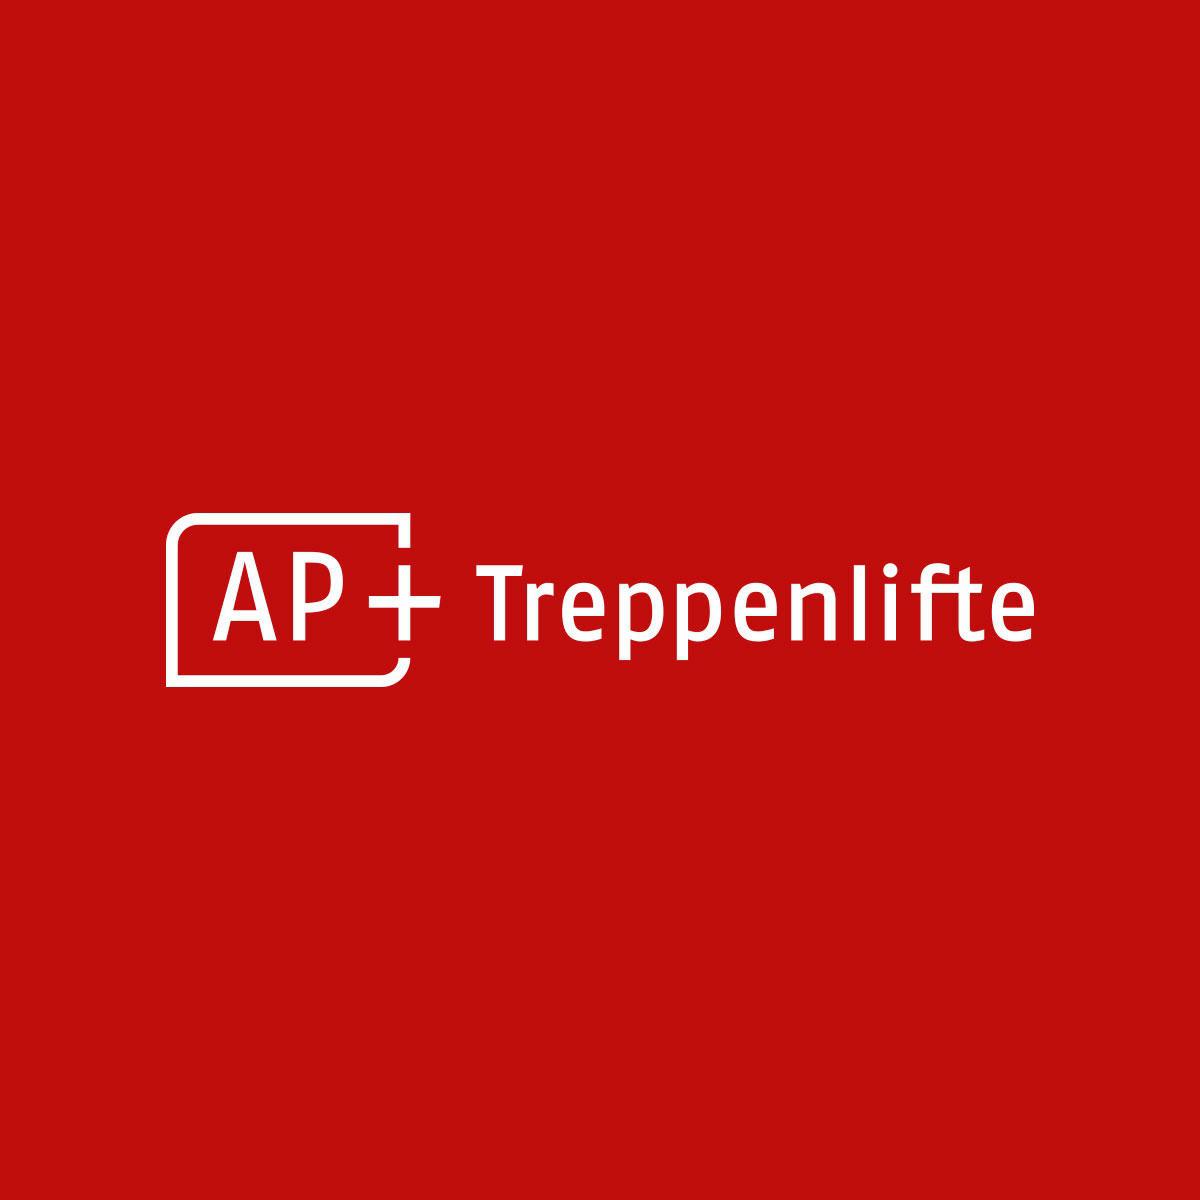 AP+ Treppenlifte  